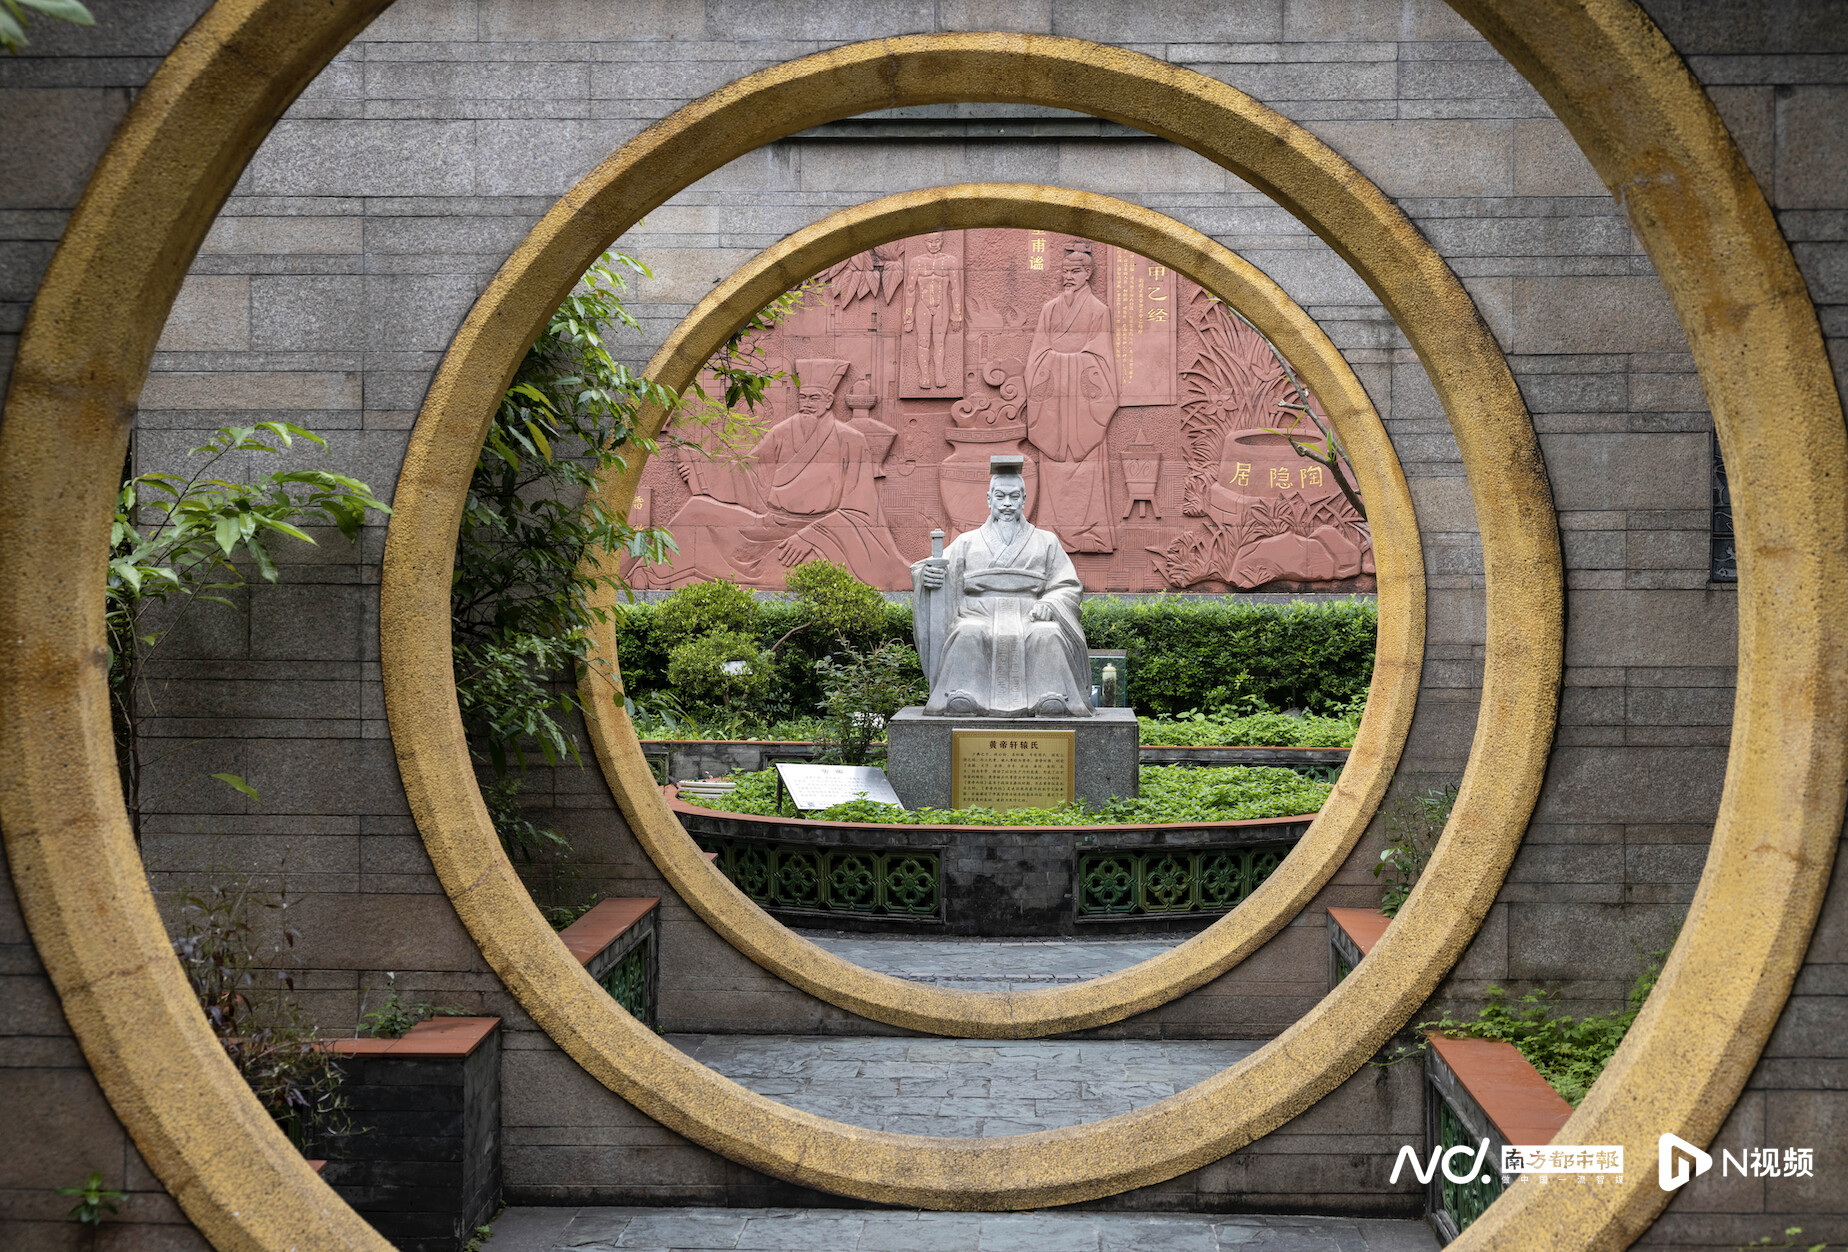 广州神农草堂中医药博物馆内的黄帝轩辕氏石像。